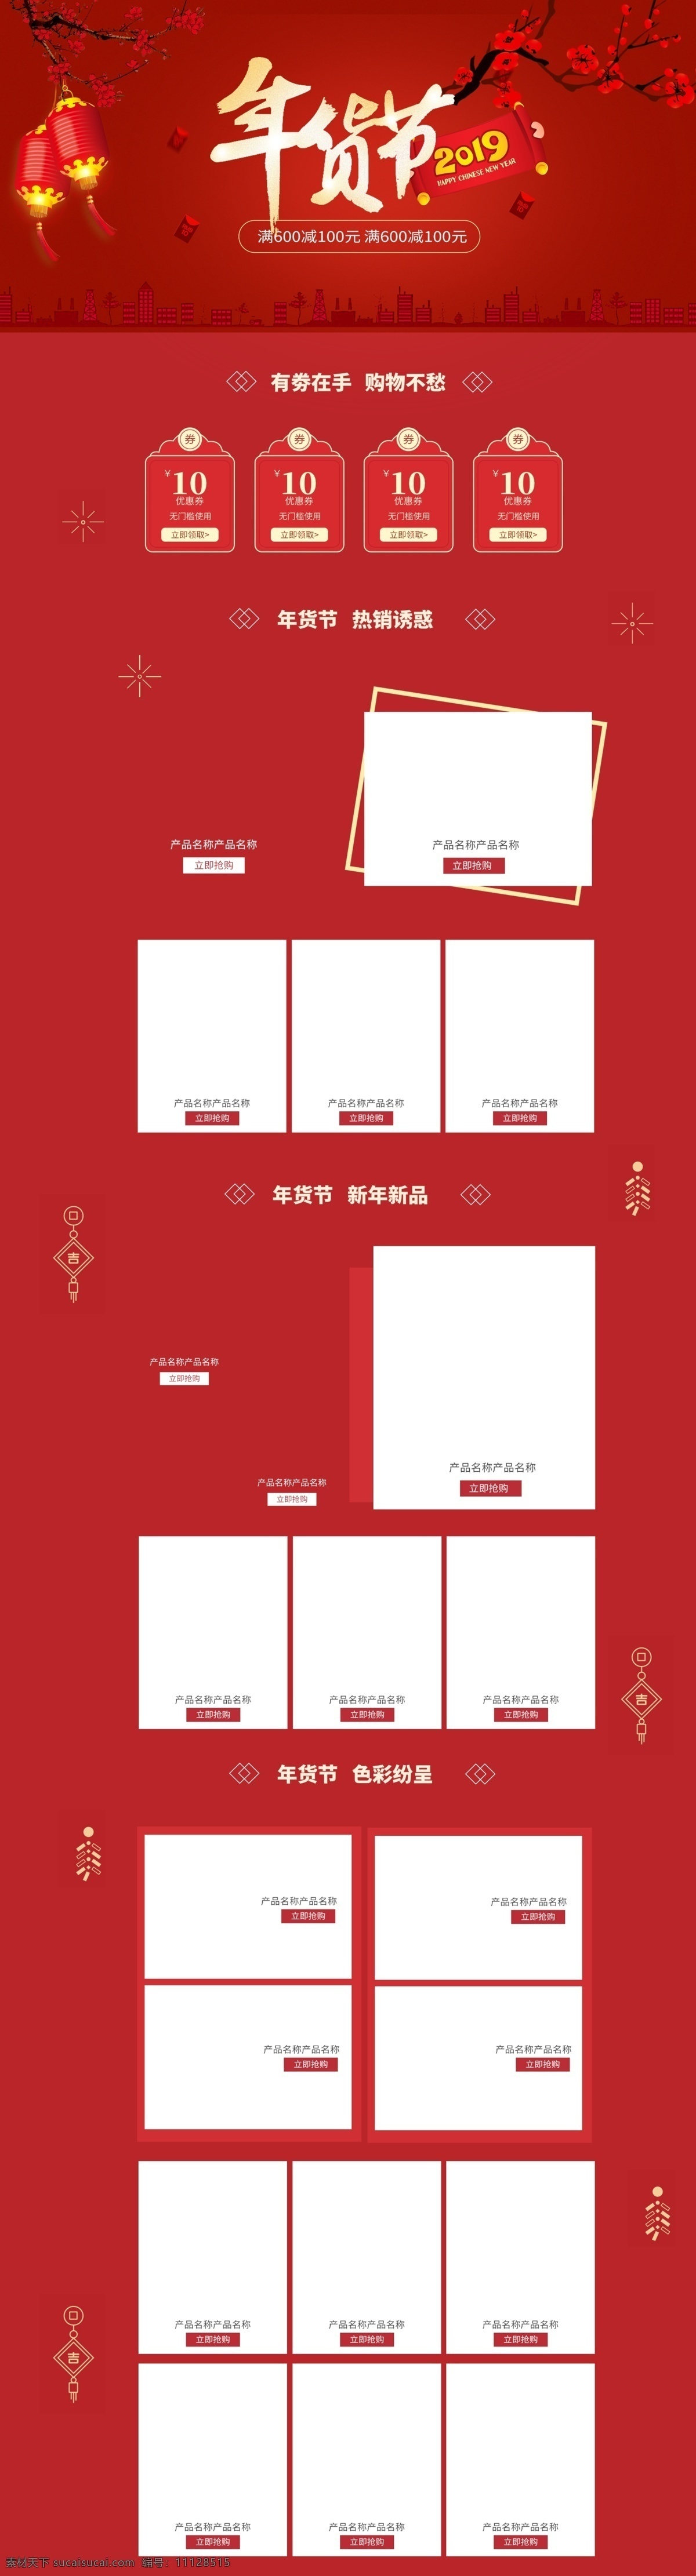 年货 节 首页 喜庆 节日 红色 中国风 春节 年货节 2019年 狂欢 活动 新年感兴趣